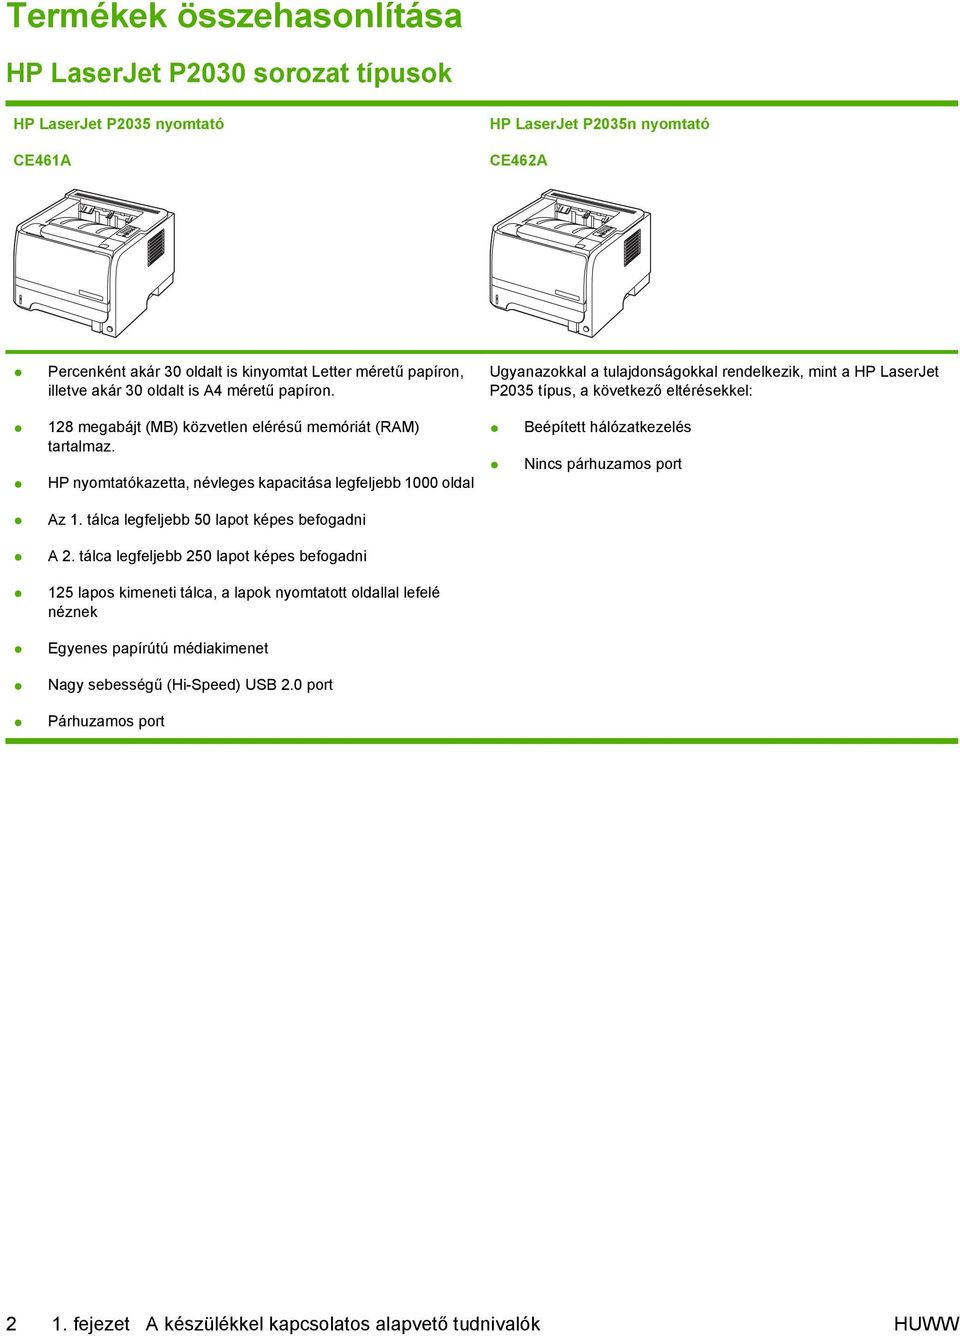 HP LaserJet P2030 sorozat nyomtató Felhasználói kézikönyv - PDF Free  Download